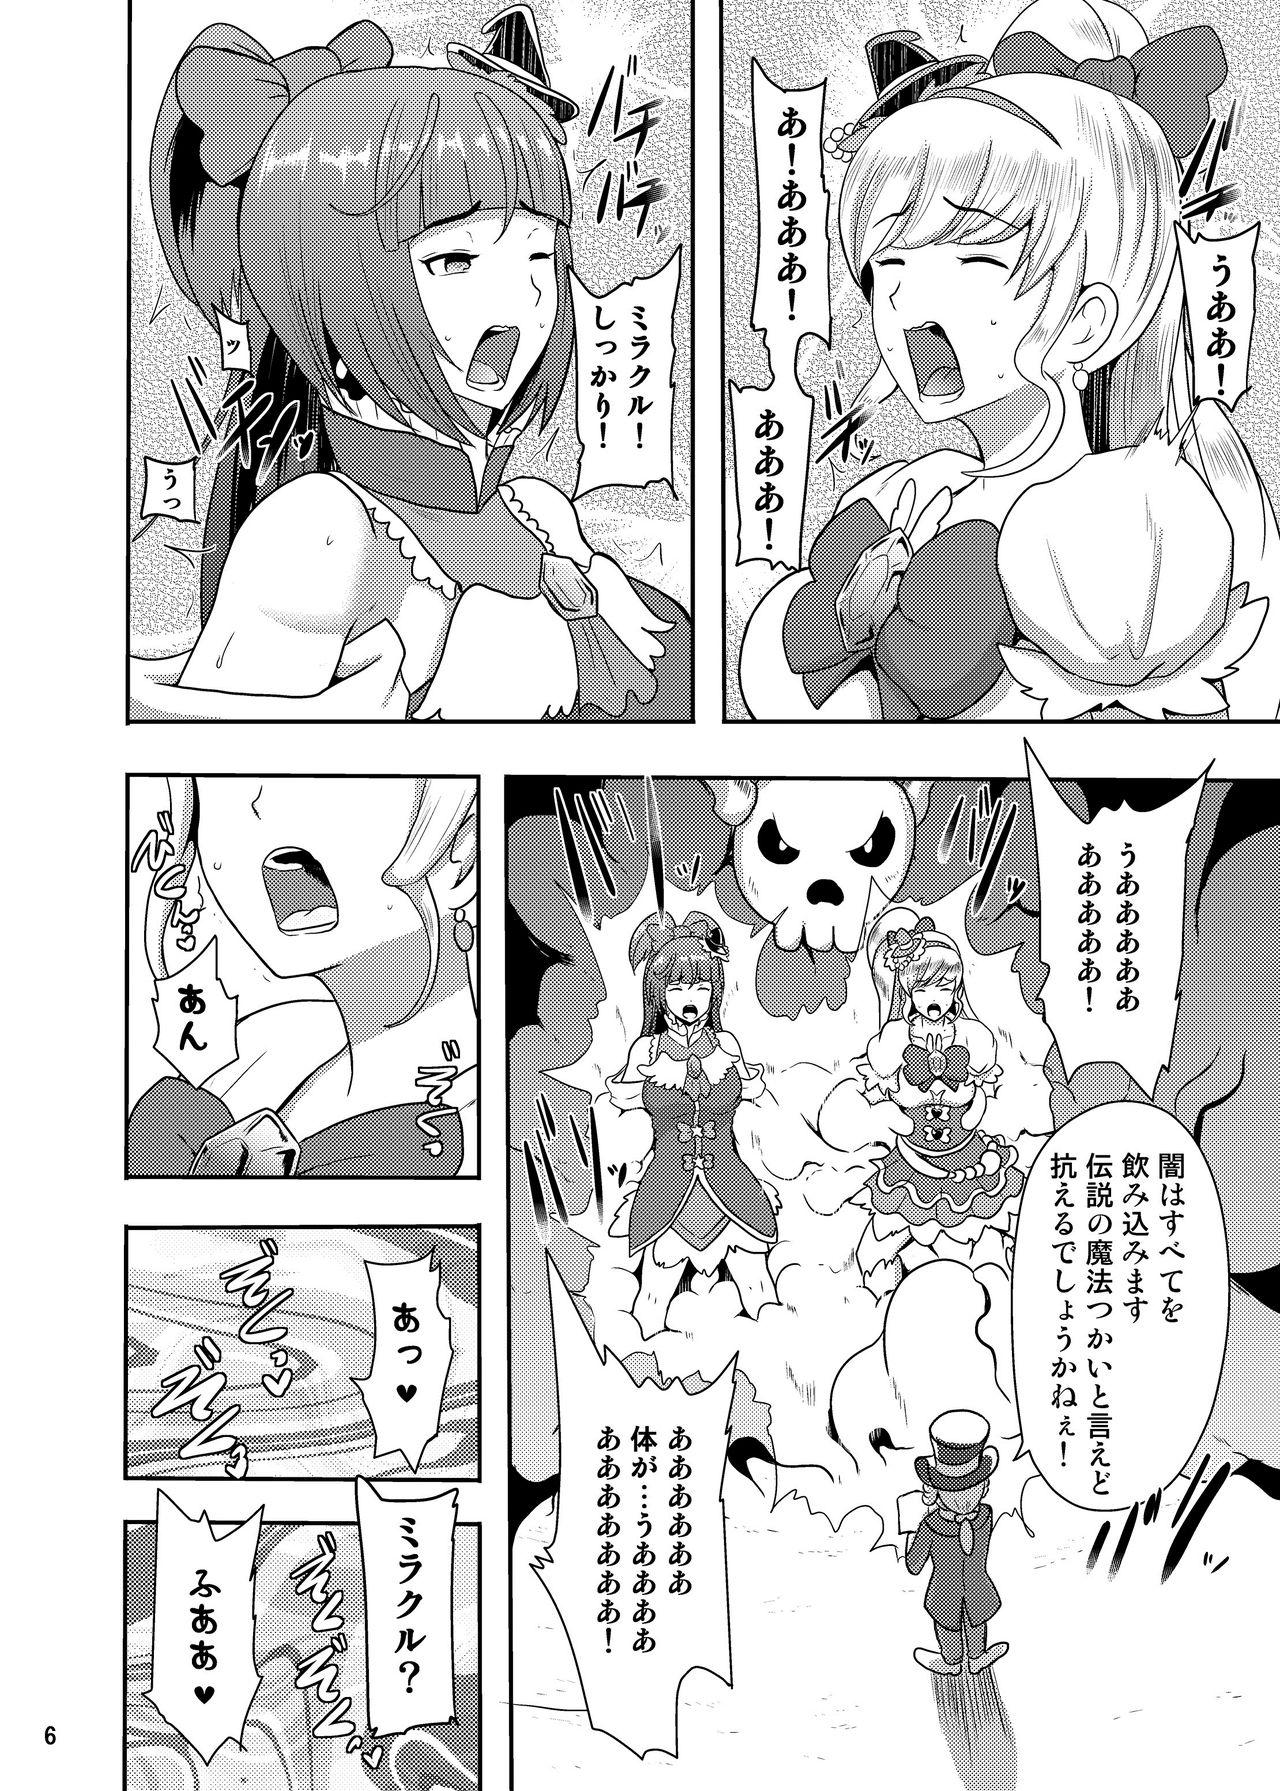 Staxxx Densetsu no Mahou Tsukai wa Kyou Inaku Narimashita - Maho girls precure Stepfamily - Page 6